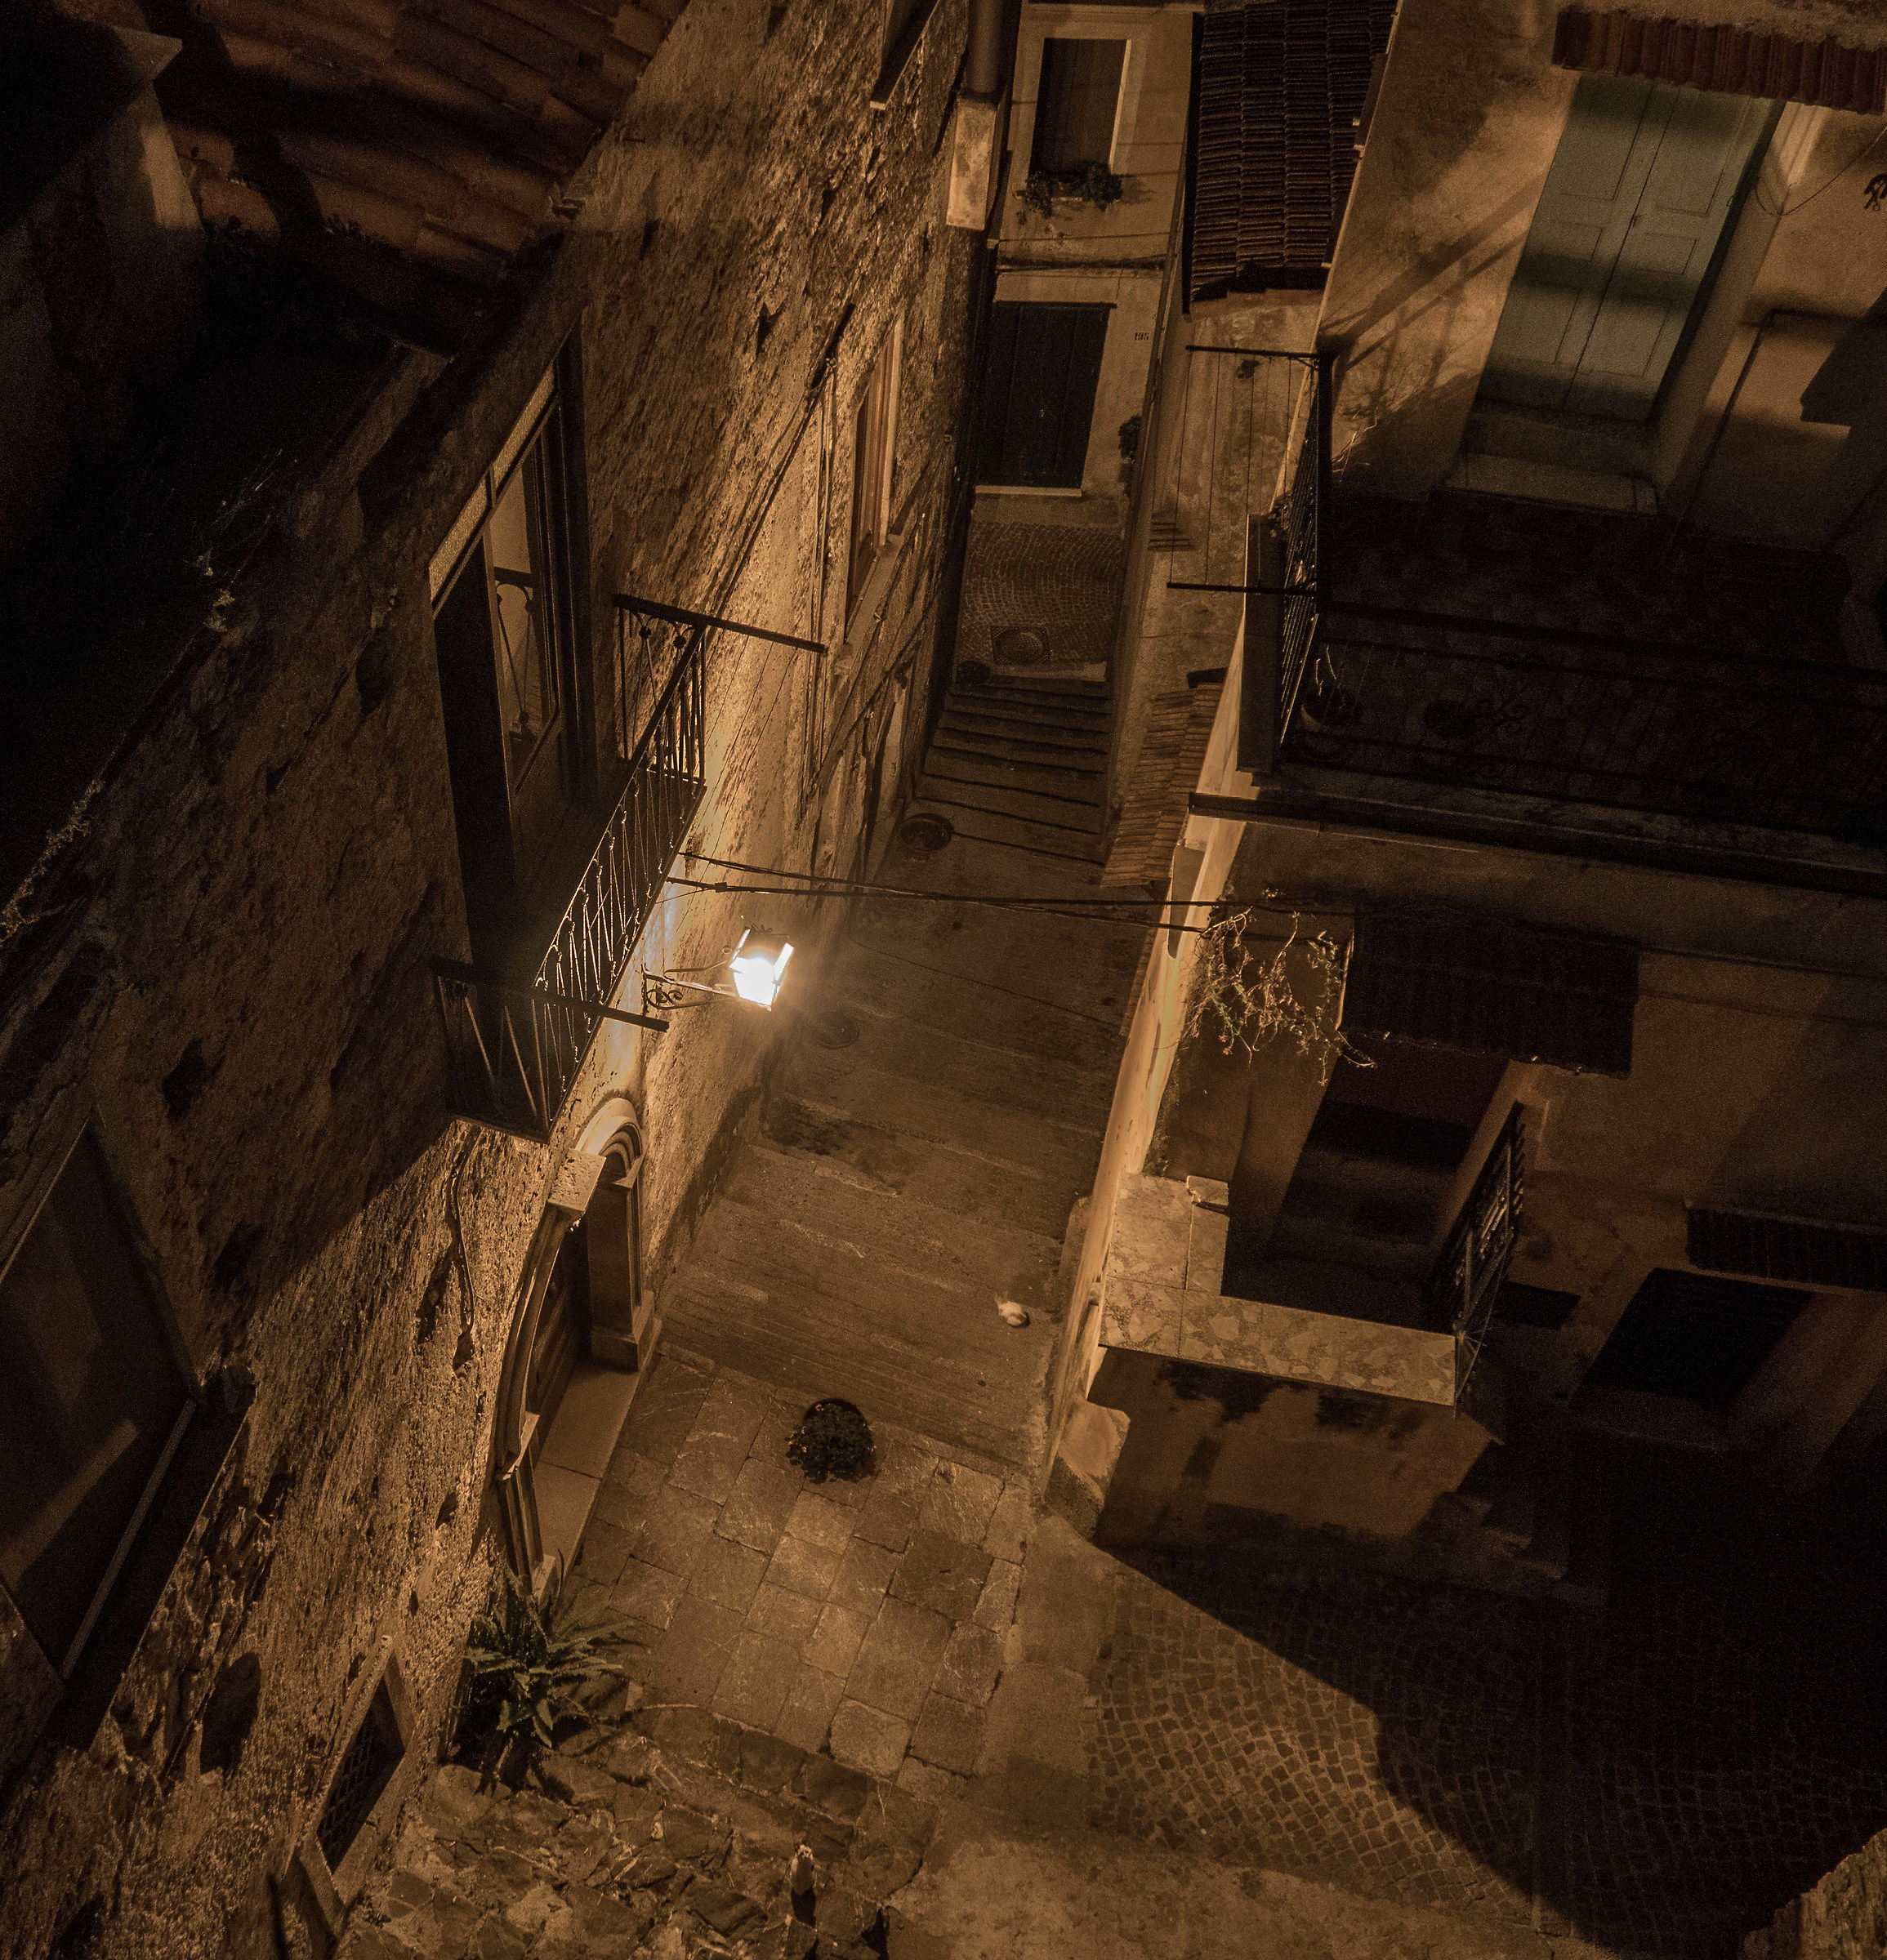 In the alleys of Vibonati...